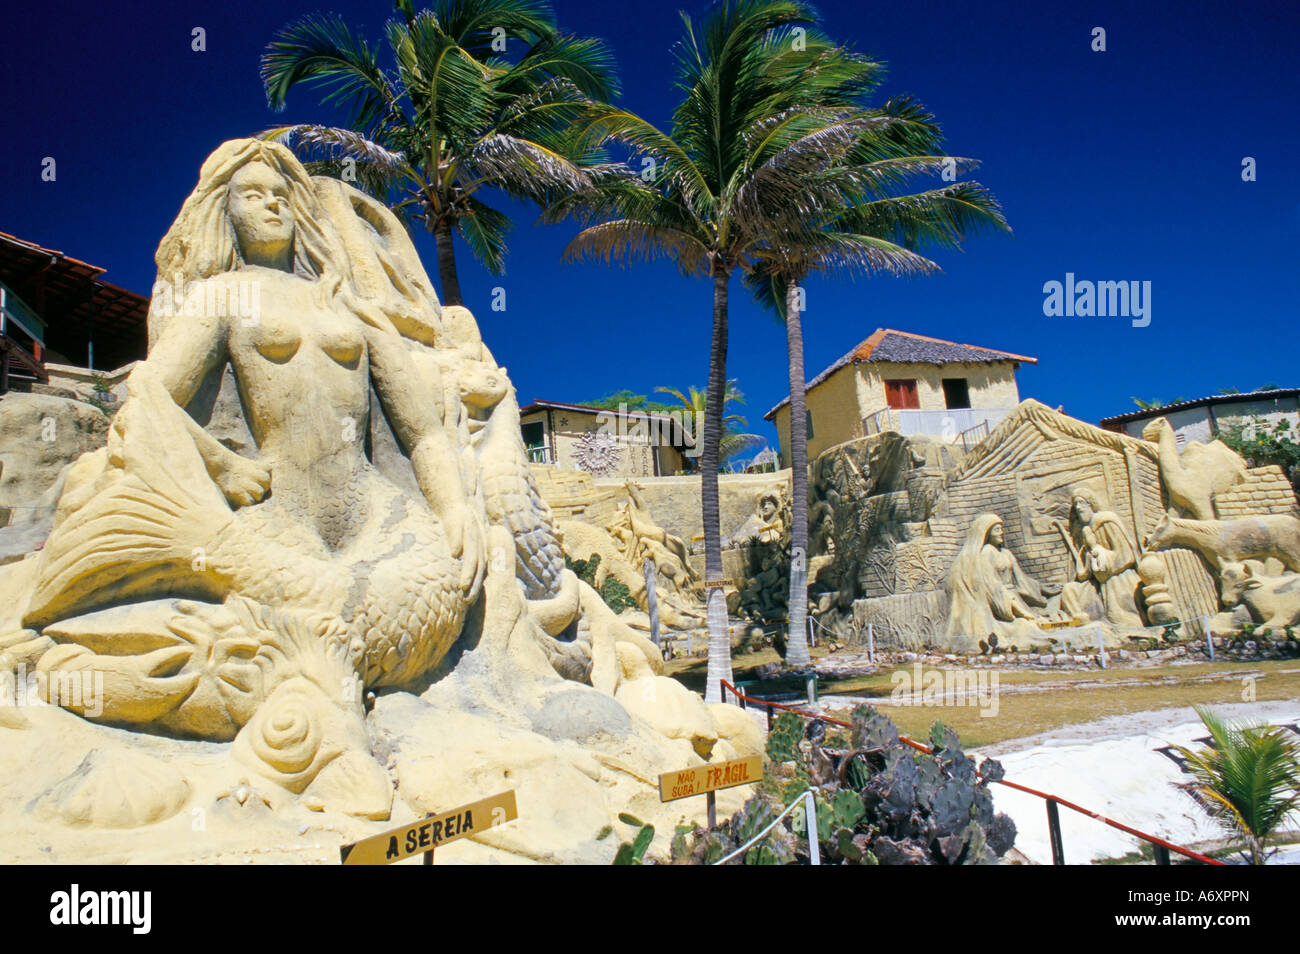 Riesige Sandskulpturen eine Meerjungfrau und Bungalows an der Küste von Ceara in der Nähe von Canoa Quedrada Ceara Brasilien Südamerika Stockfoto